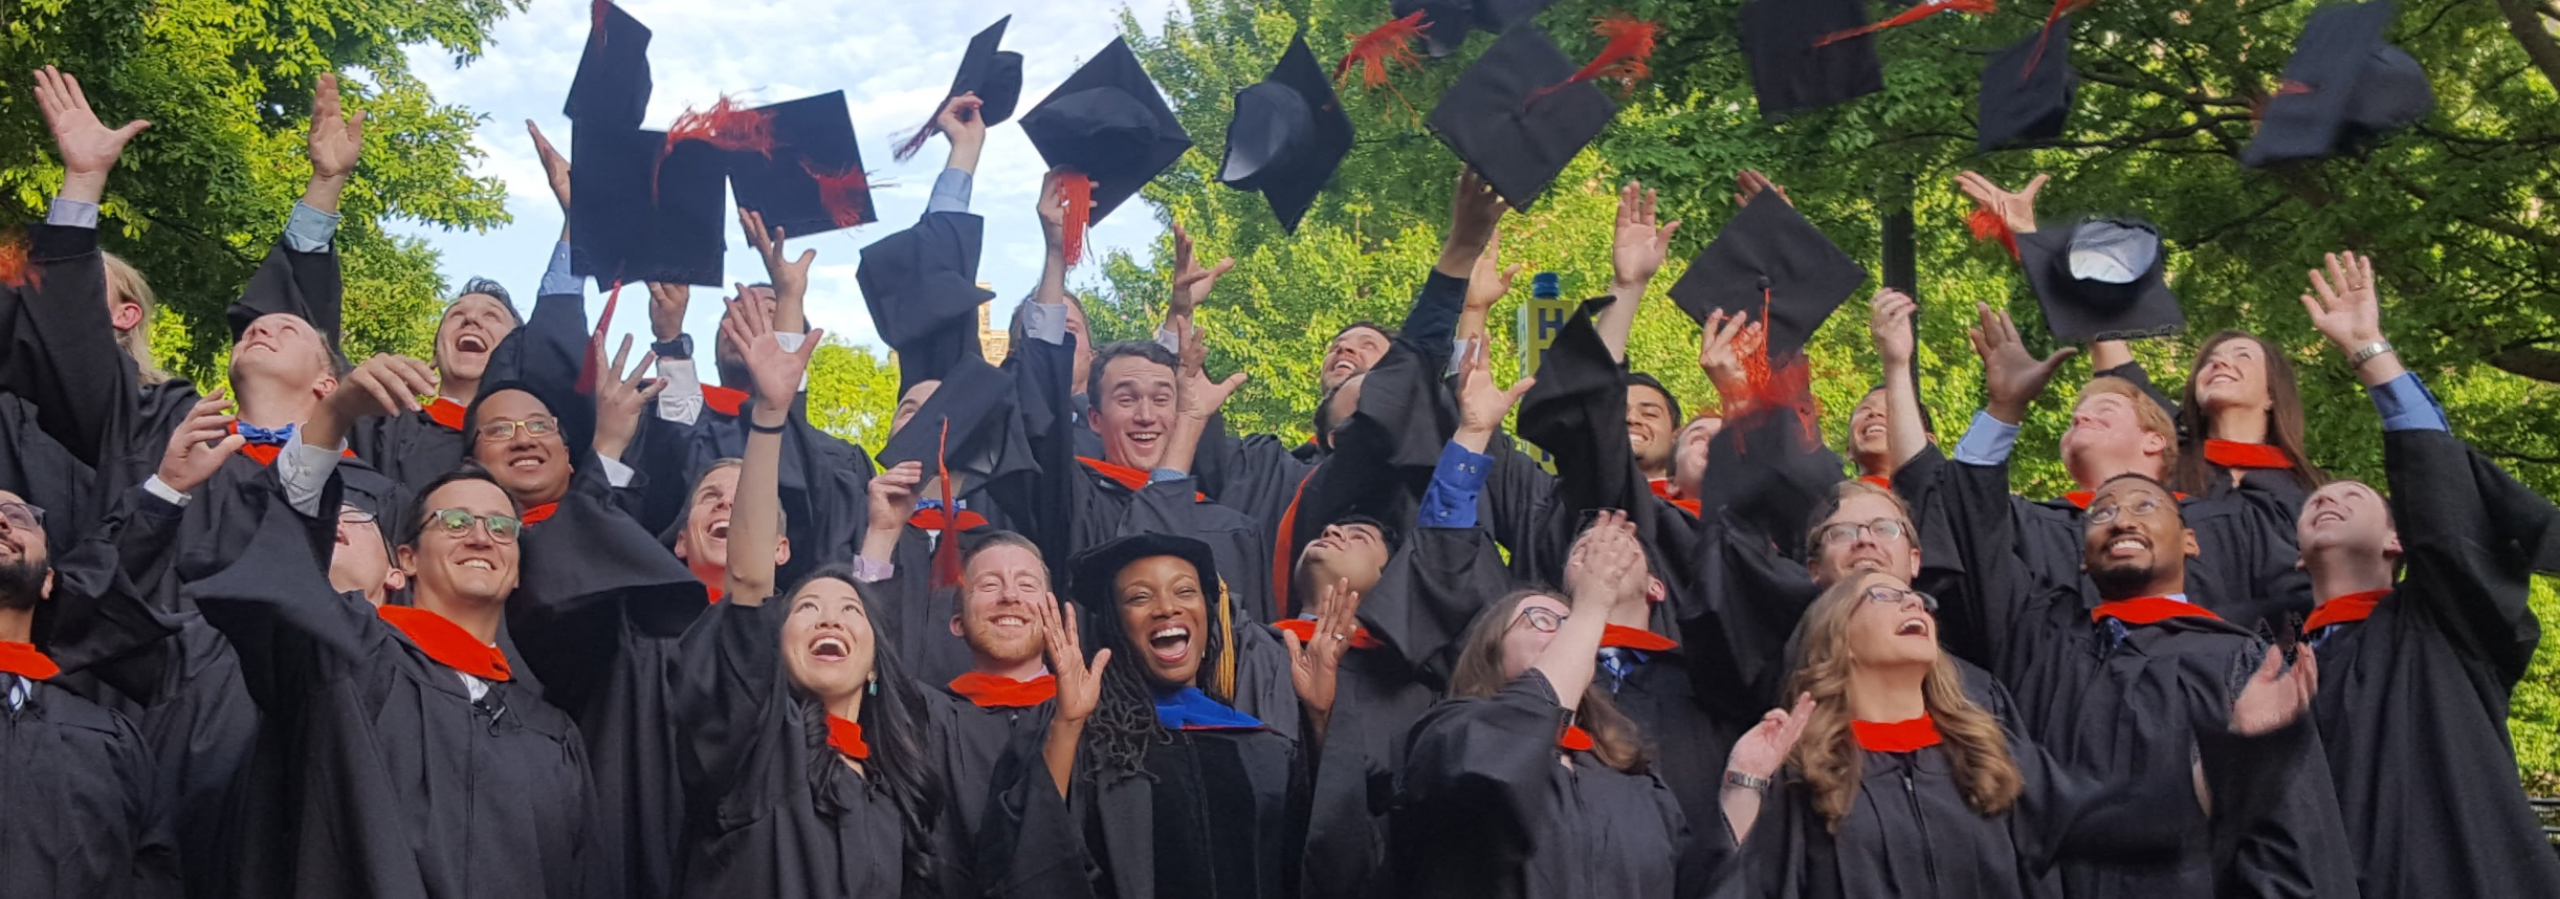 Duke Master of Engineering Management graduates celebrate